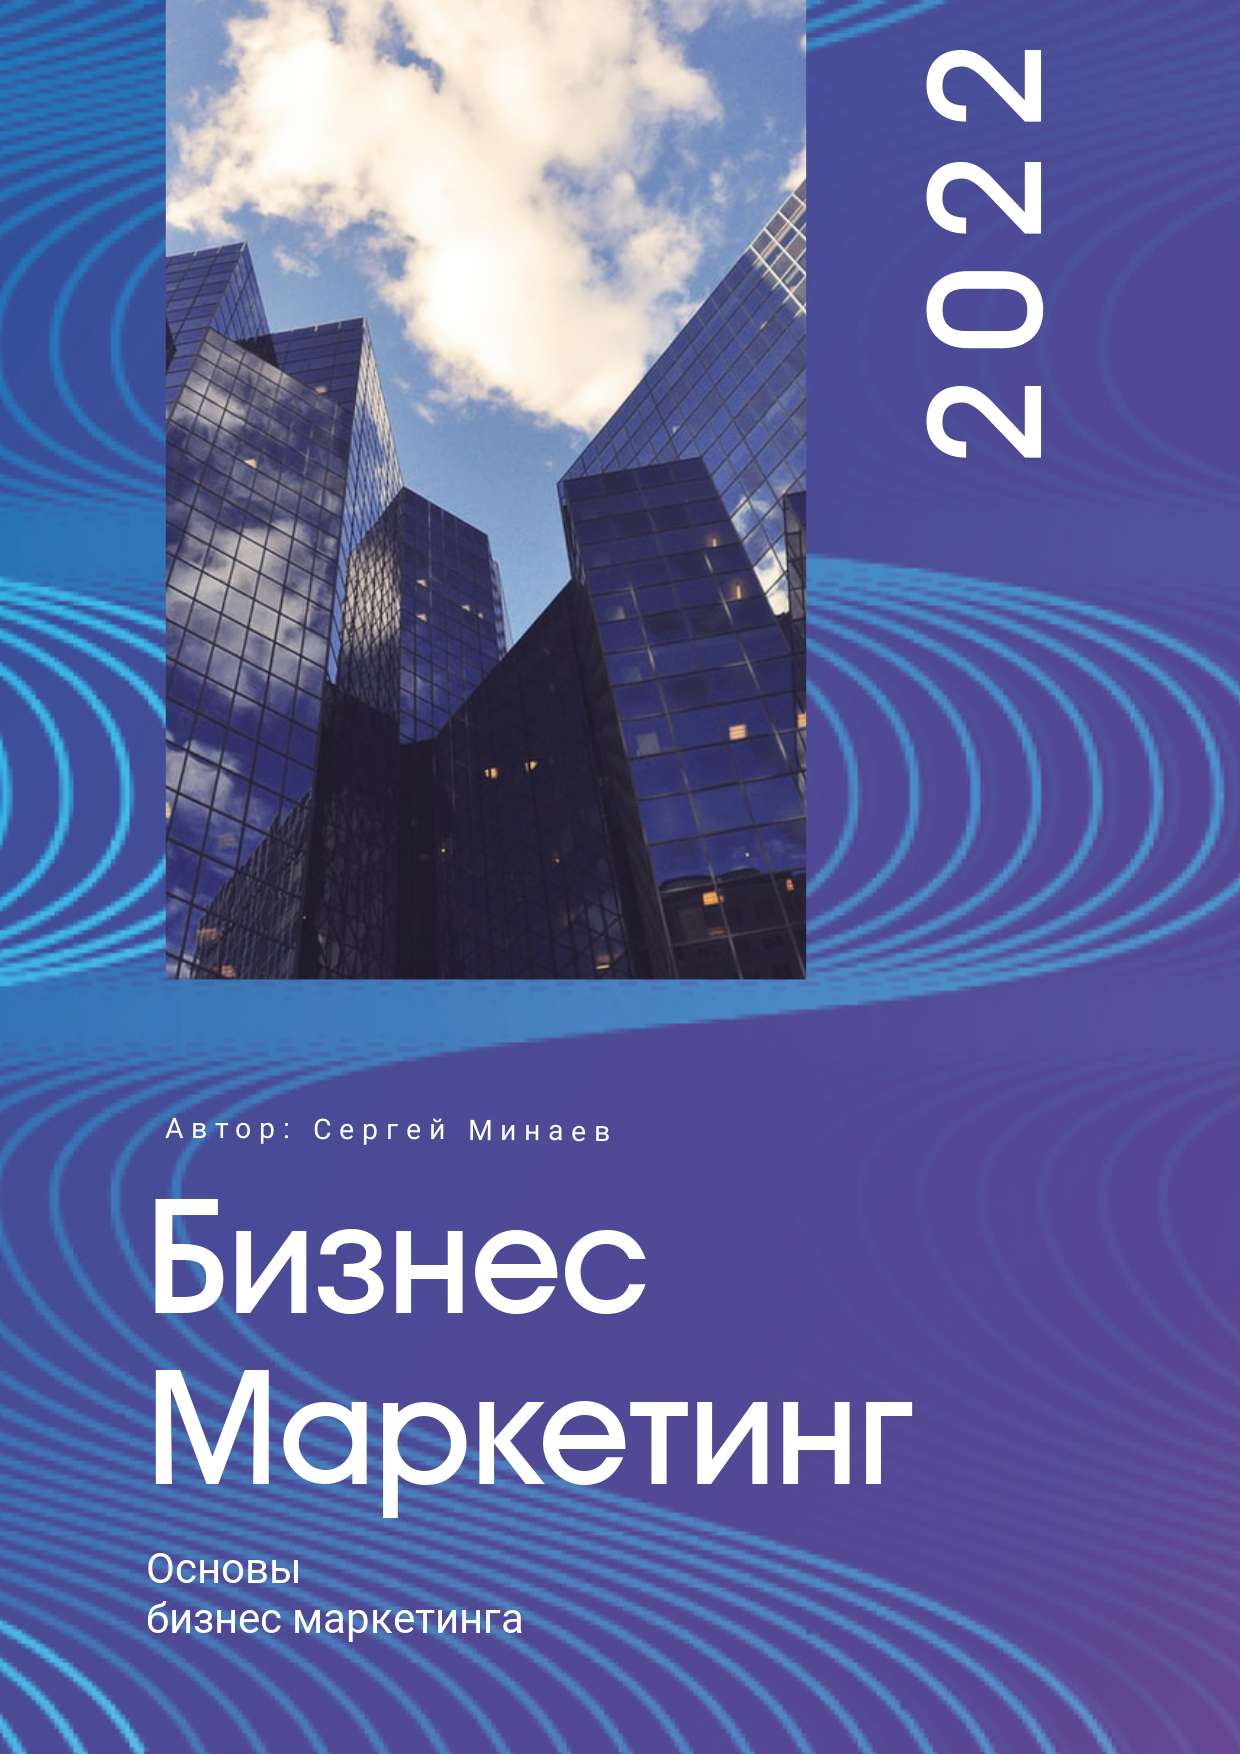 Фиолетовая обложка для презентации с яркими абстрактными бирюзовыми линиями на фоне